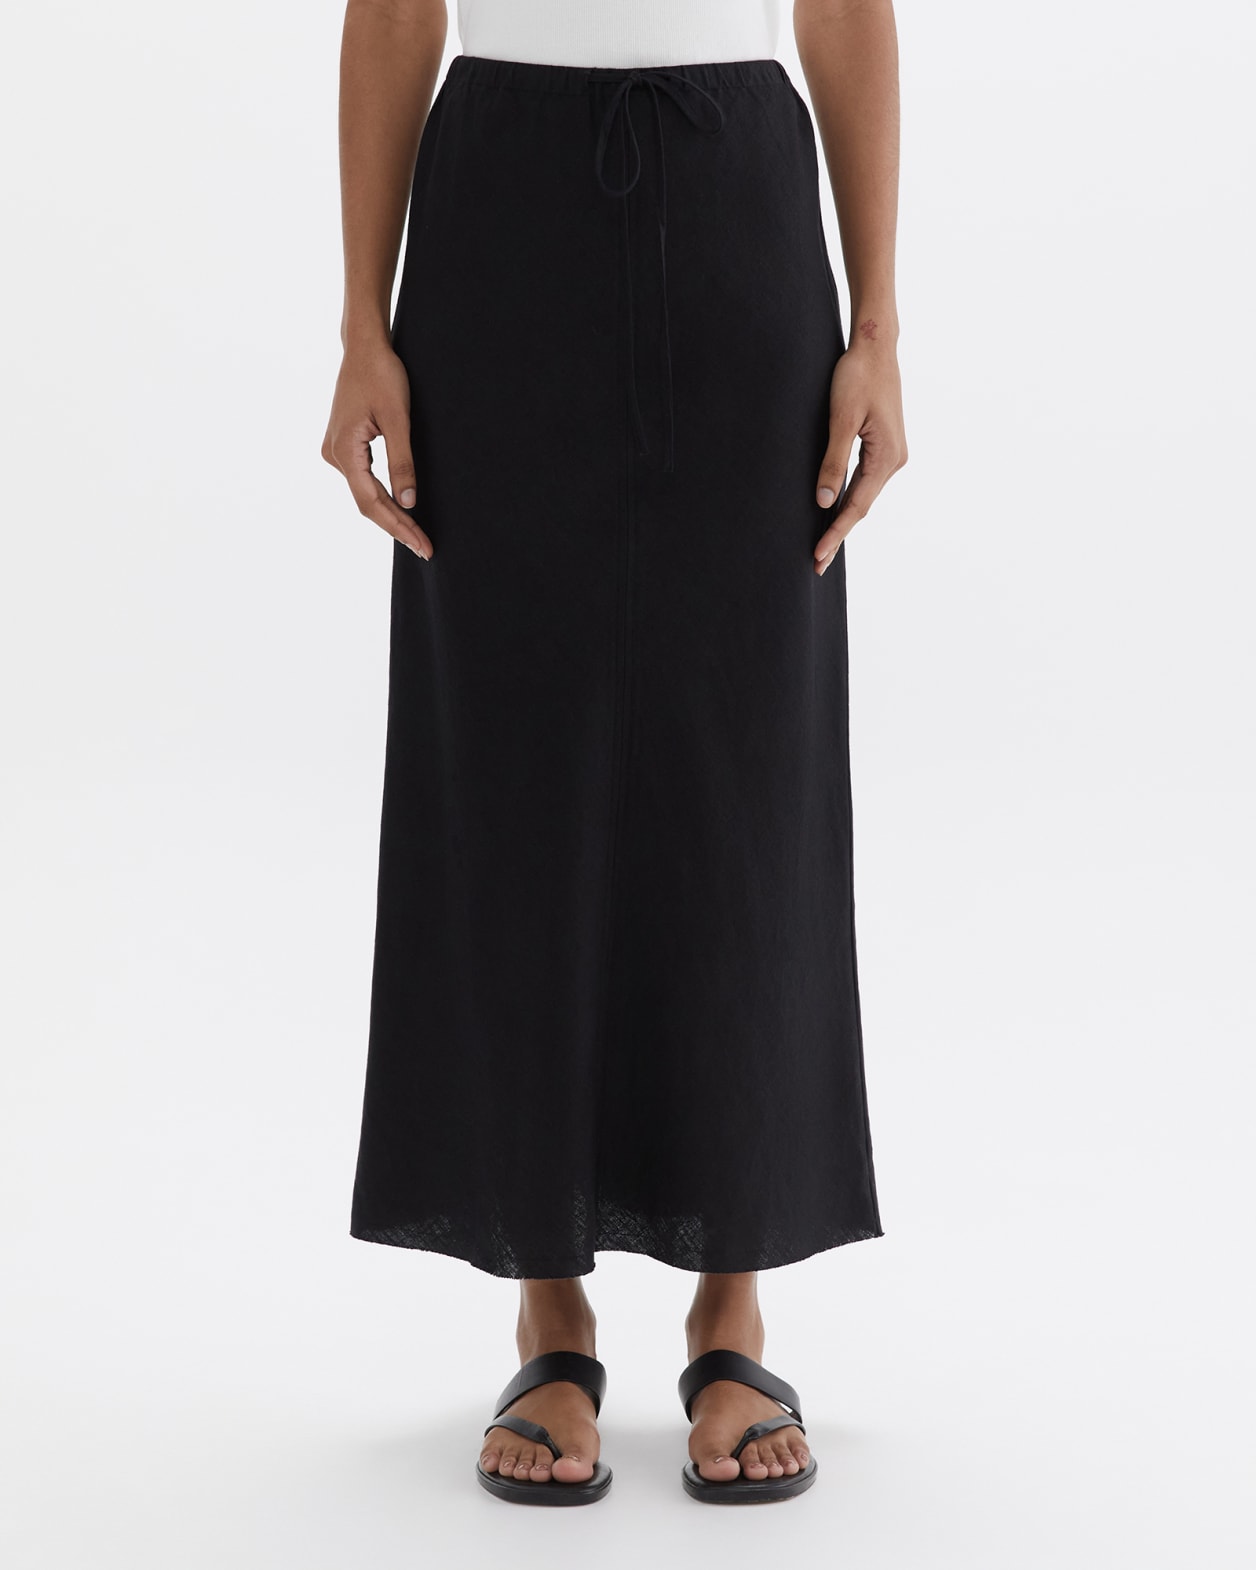 Marcie Easy Linen Slip Skirt in BLACK